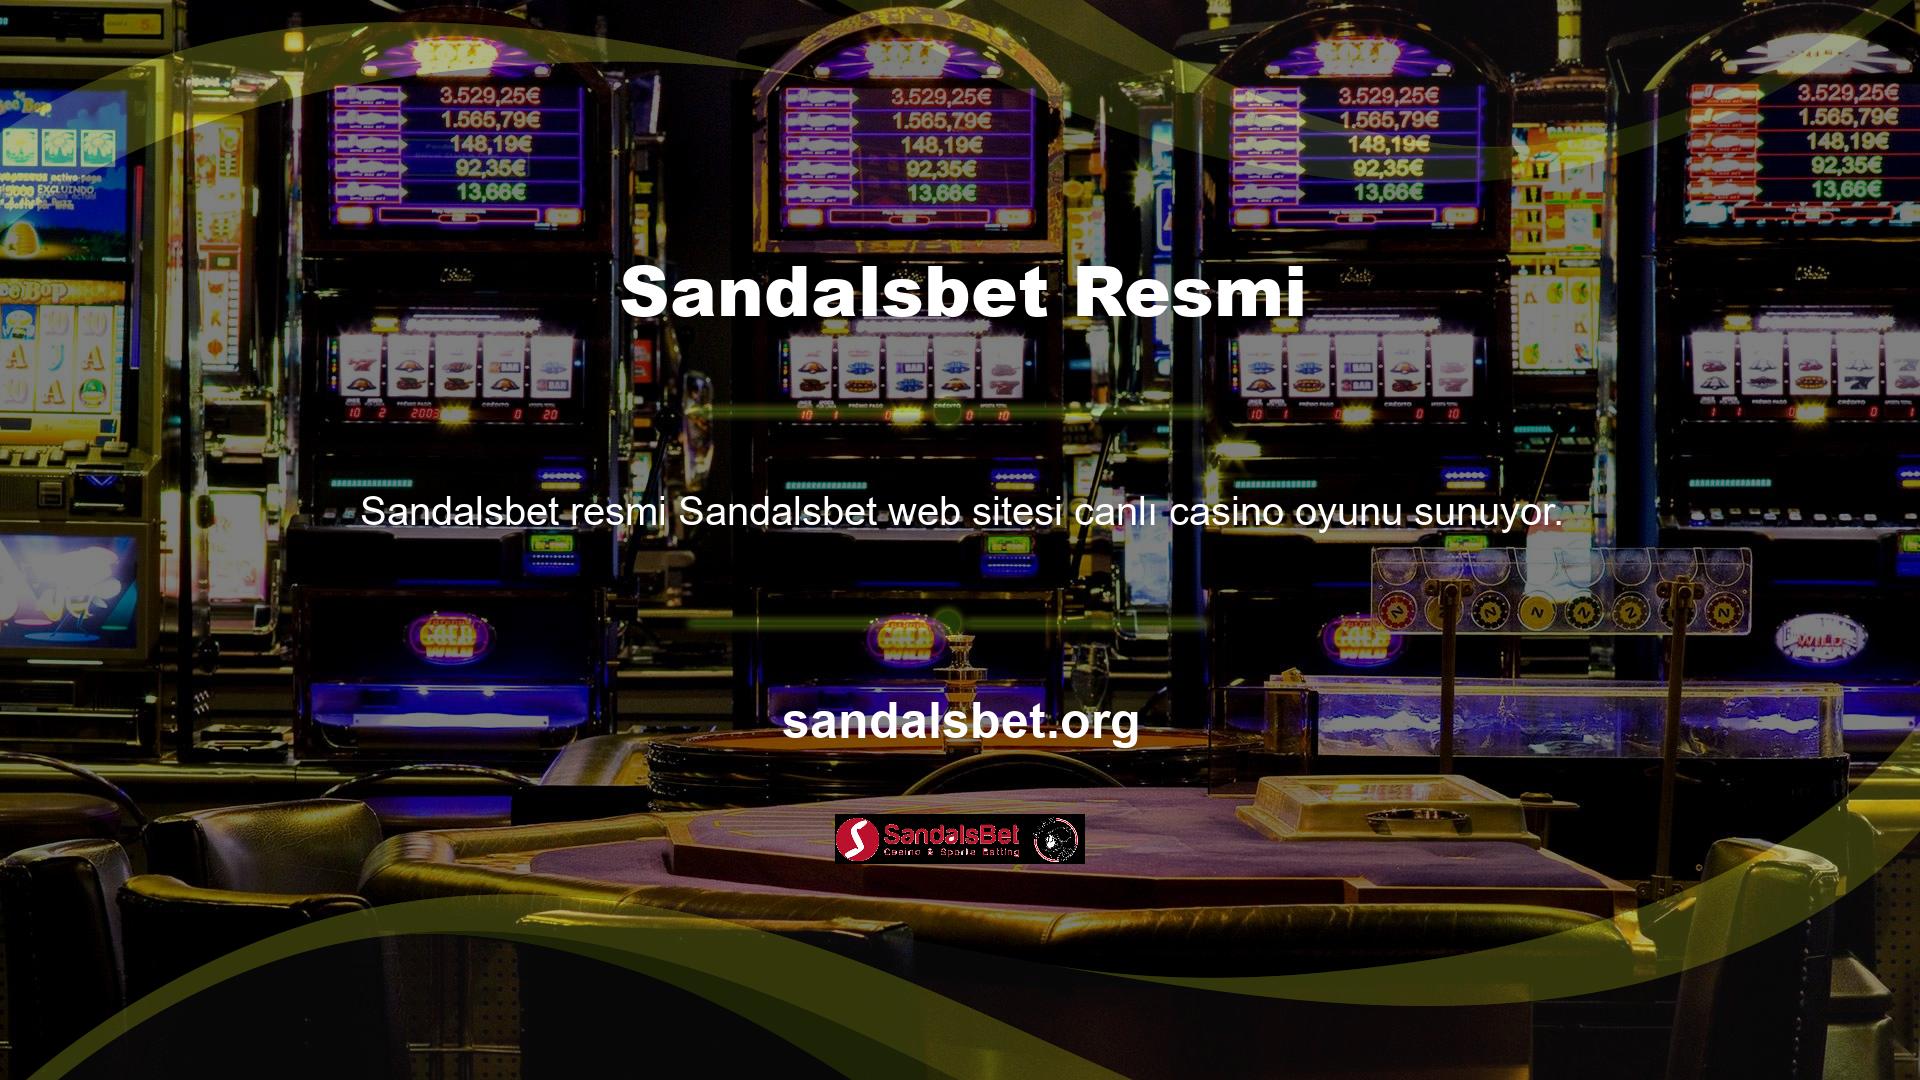 Ayrıca Sandalsbet web sitesi blackjack ve bakara dahil çeşitli poker oyunlarına erişim sağlar